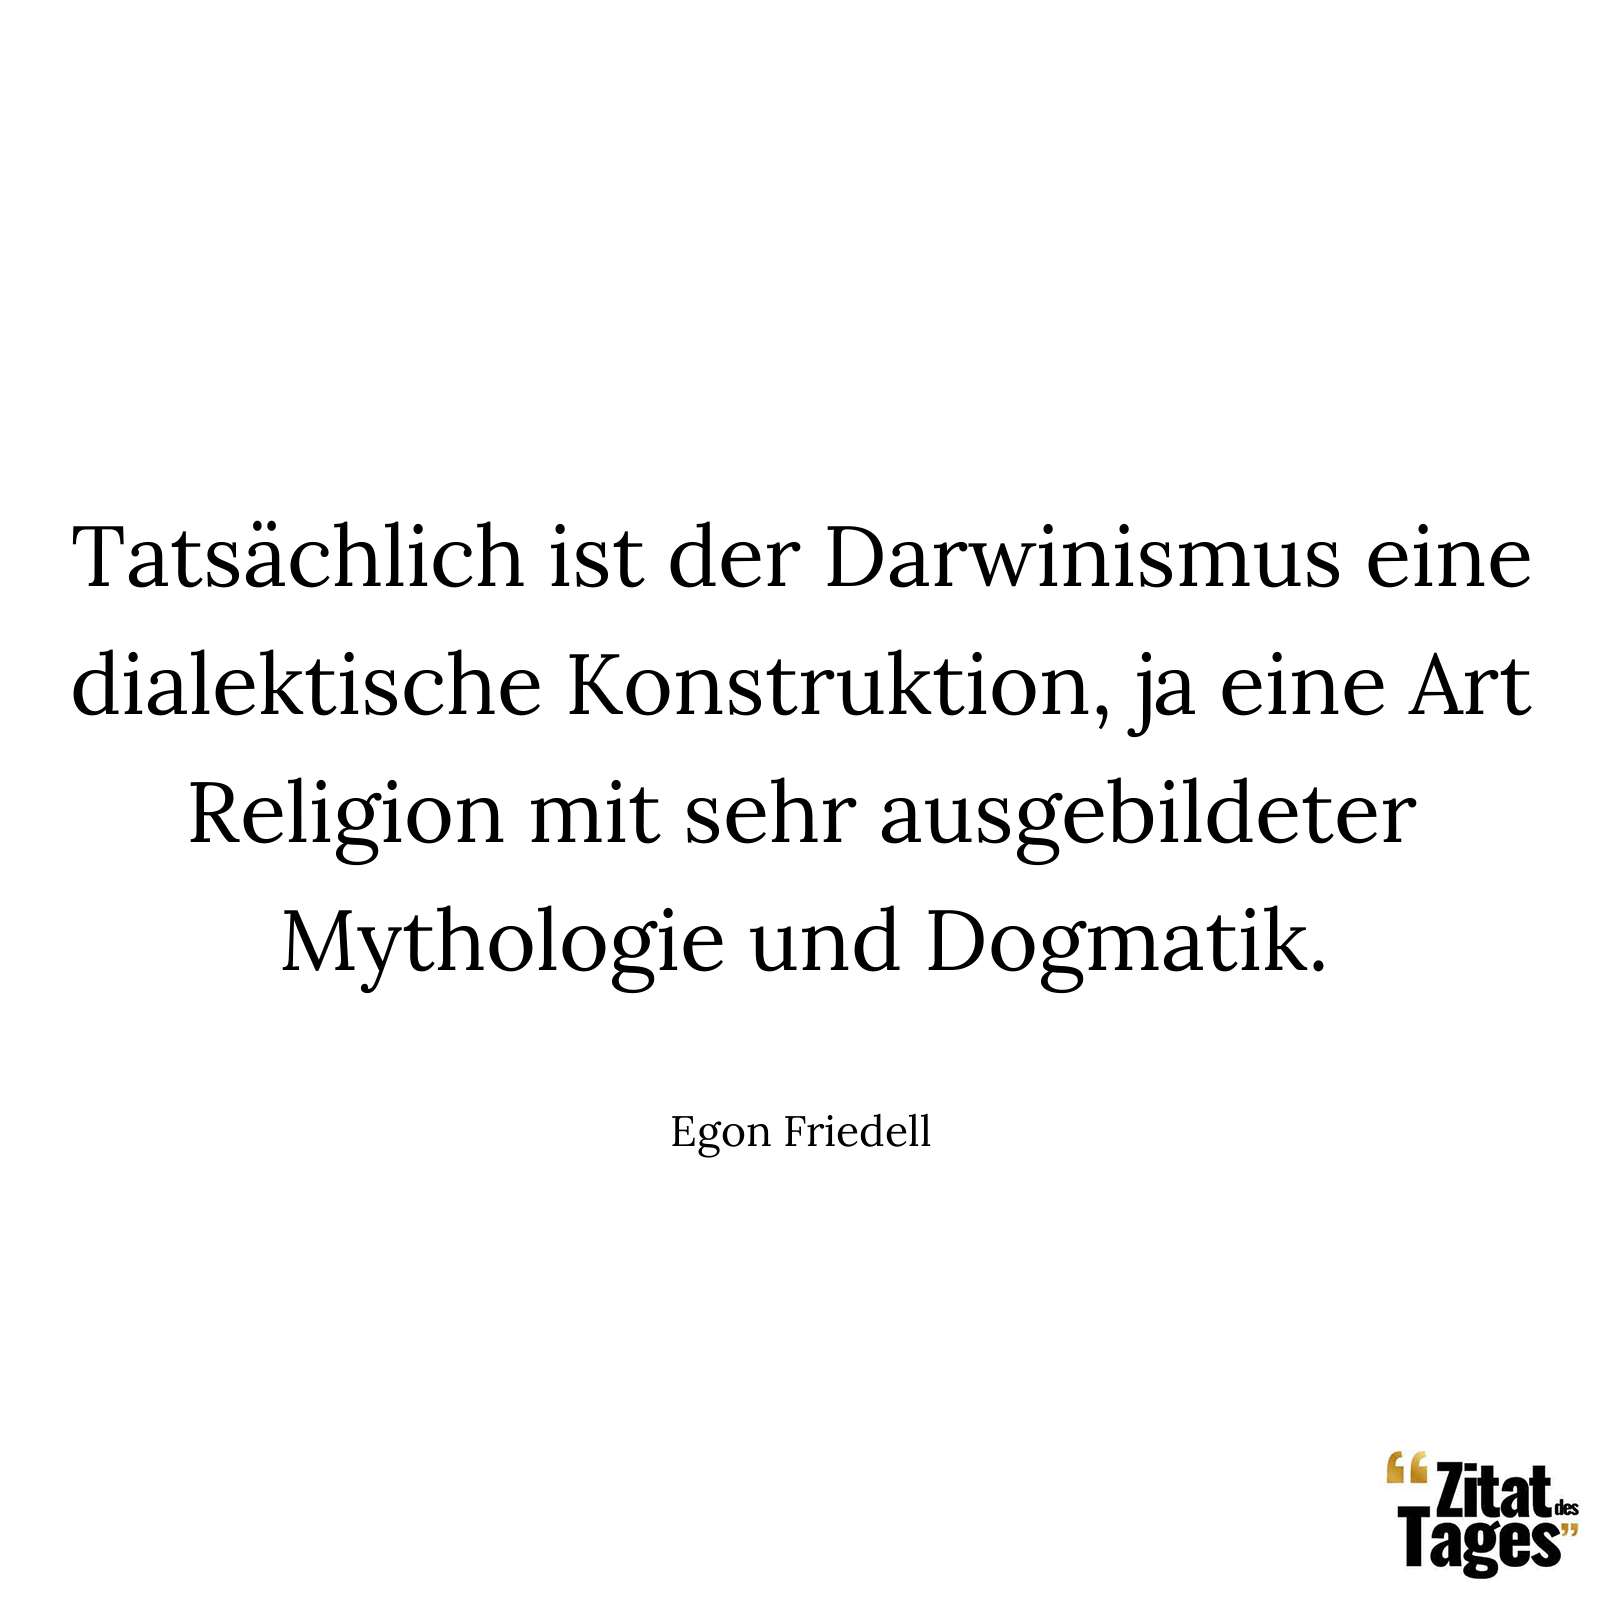 Tatsächlich ist der Darwinismus eine dialektische Konstruktion, ja eine Art Religion mit sehr ausgebildeter Mythologie und Dogmatik. - Egon Friedell